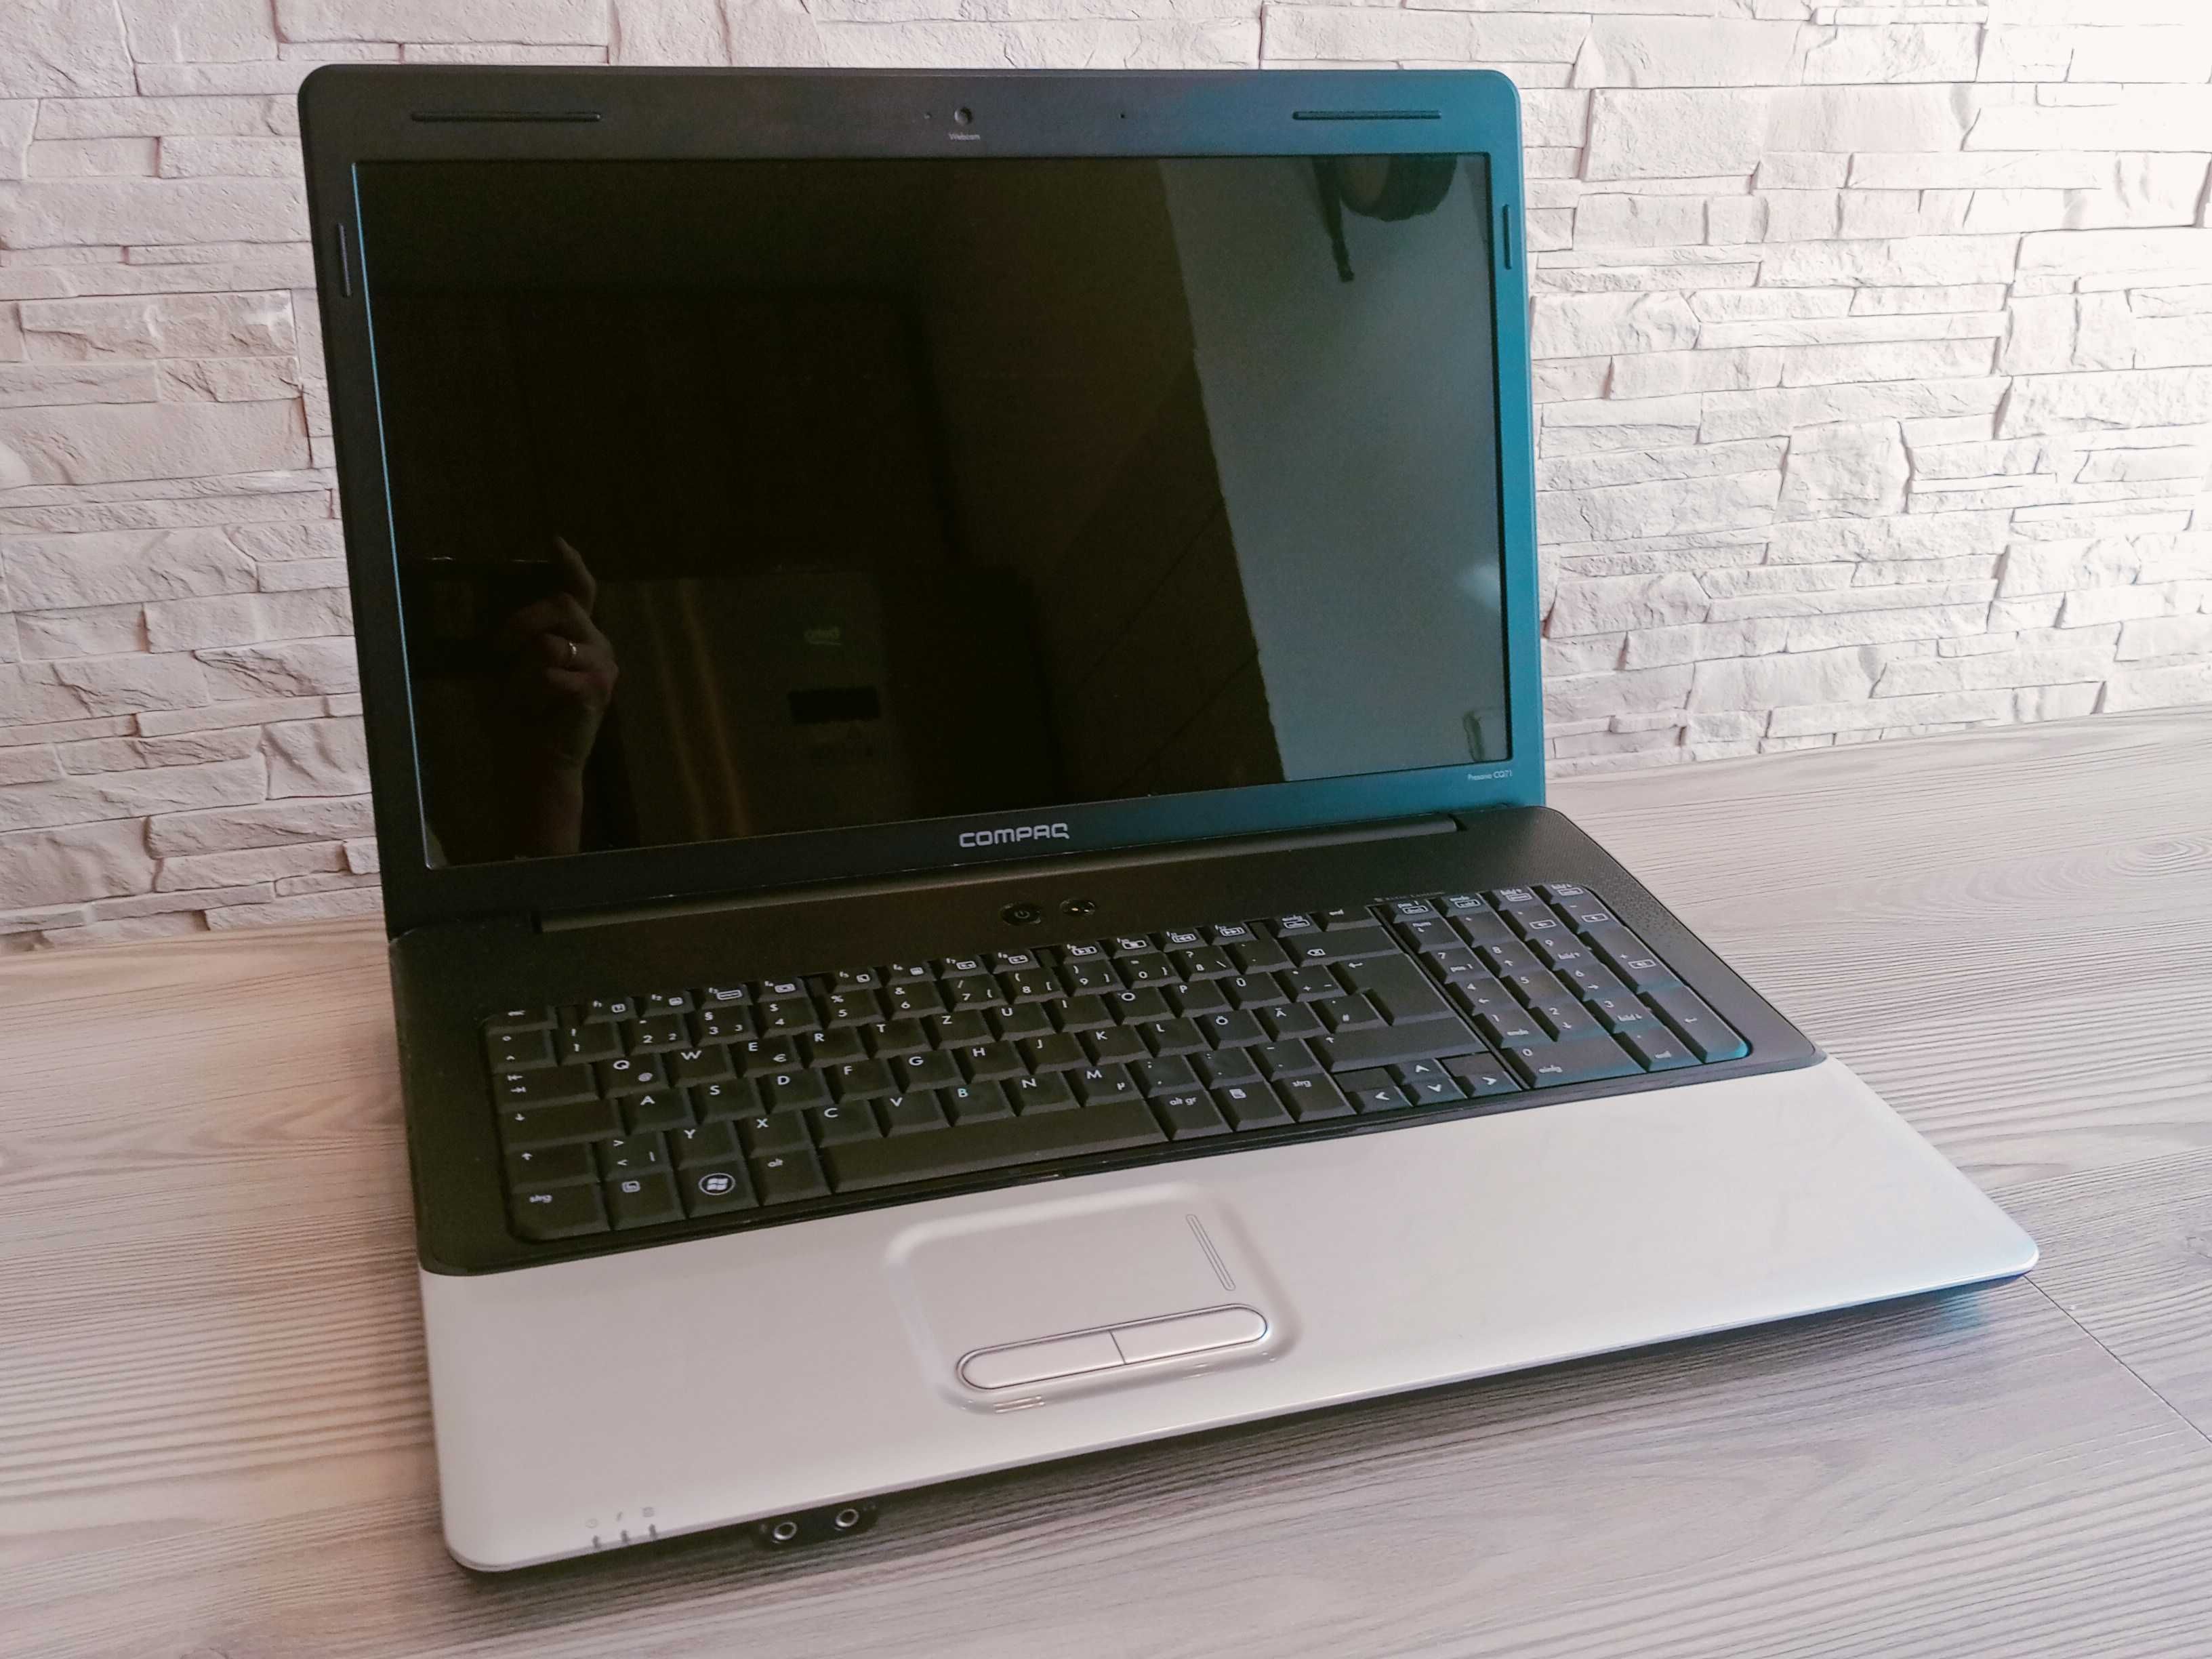 Laptop HP Presario CQ71 + oryginalny zasilacz